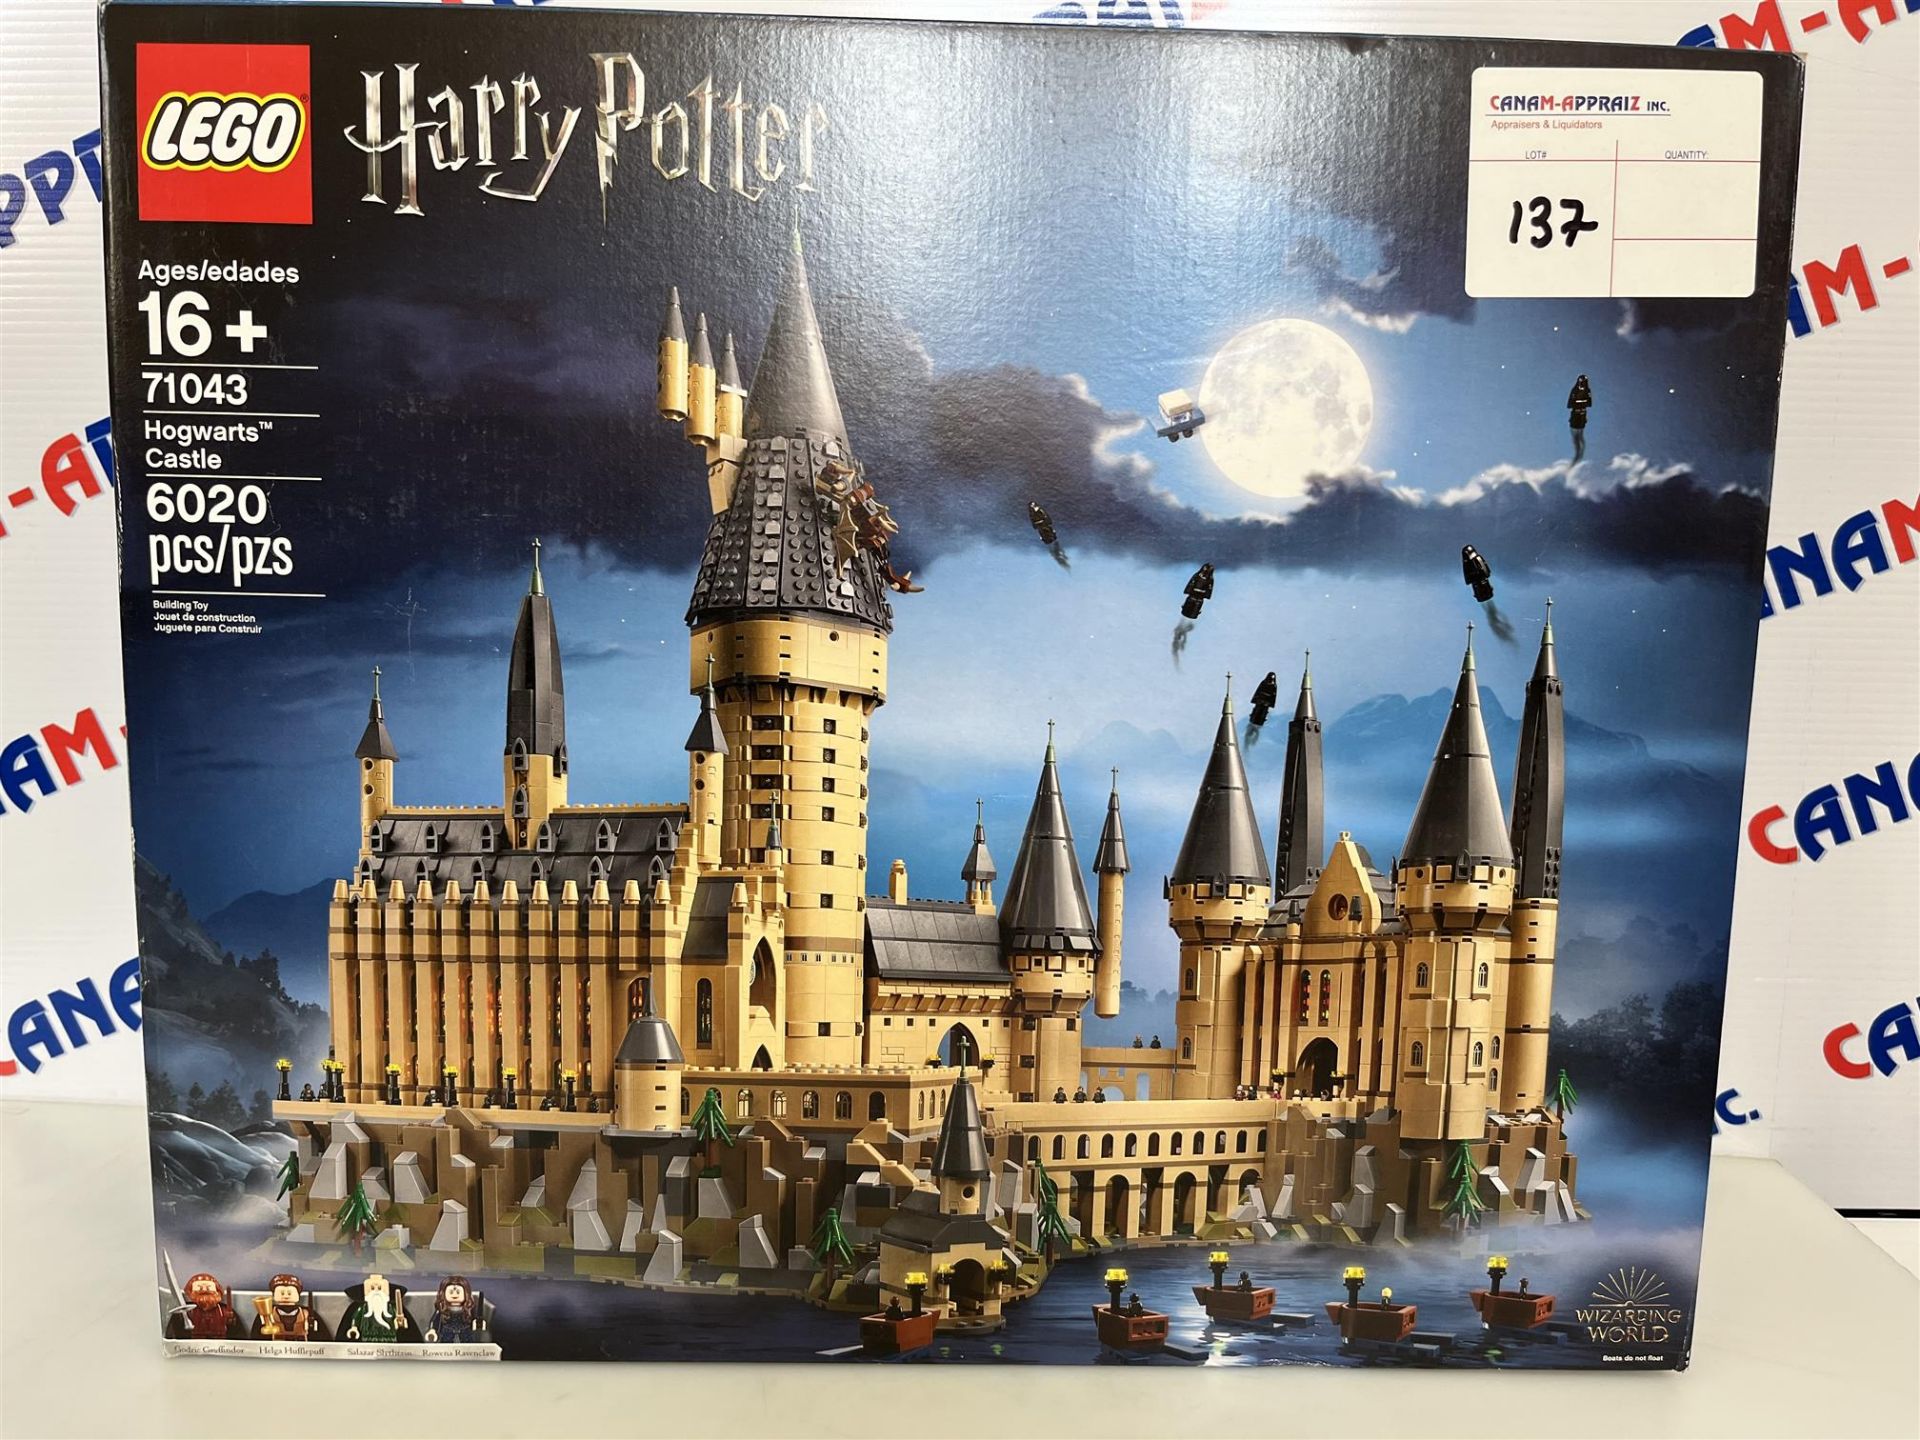 Lego Harry Potter - 71043 Hogwarts Castle - Ages 16+ - 6020 PCS